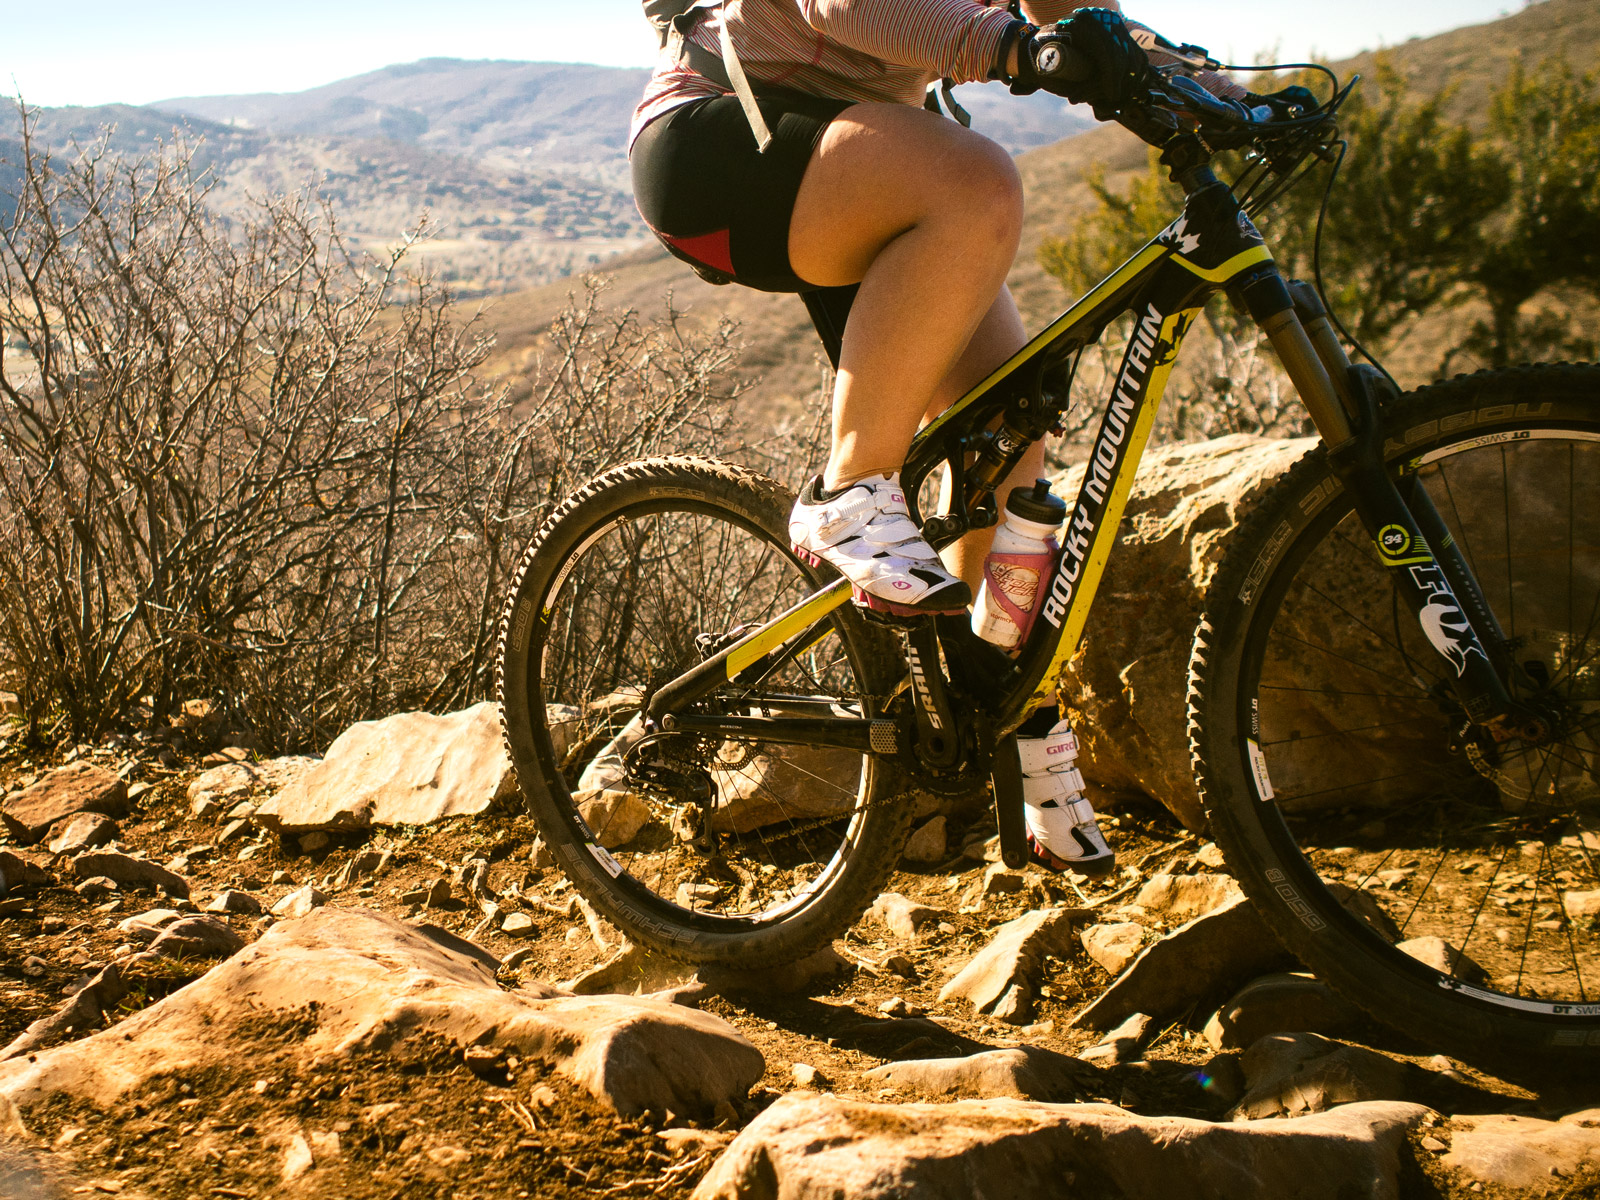 Black Details about   Giro Manta Lace Womens Mountain Bike Cycling Shoes 